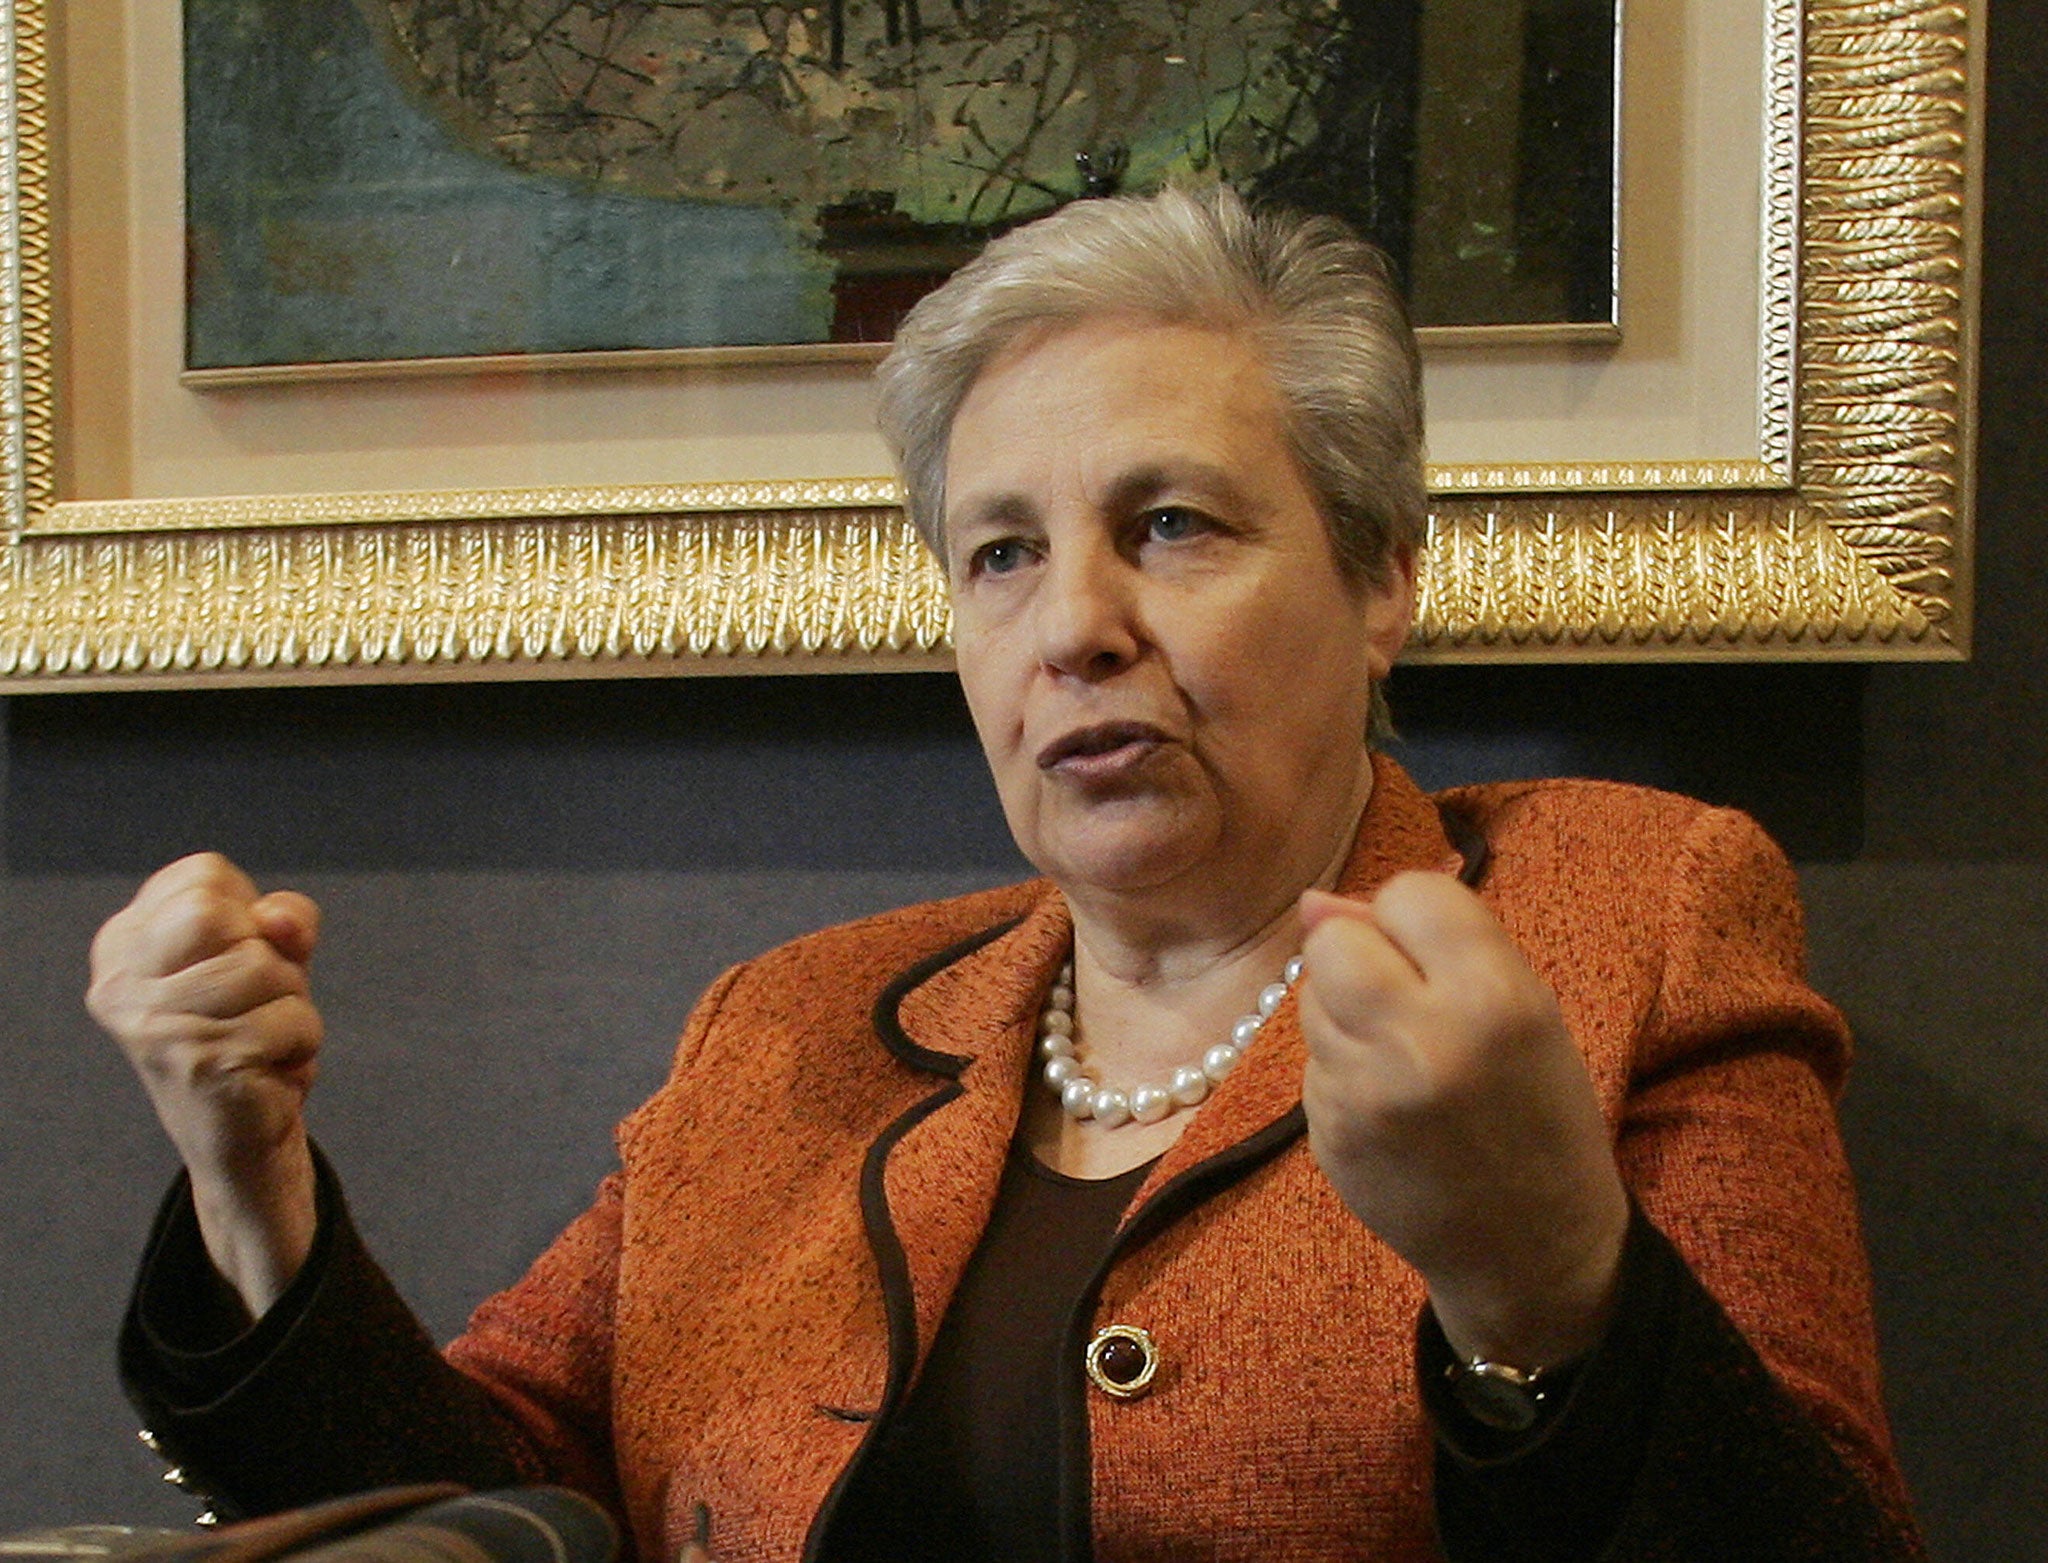 Sicilian politician and anti-Mafia activist, Rita Borsellino